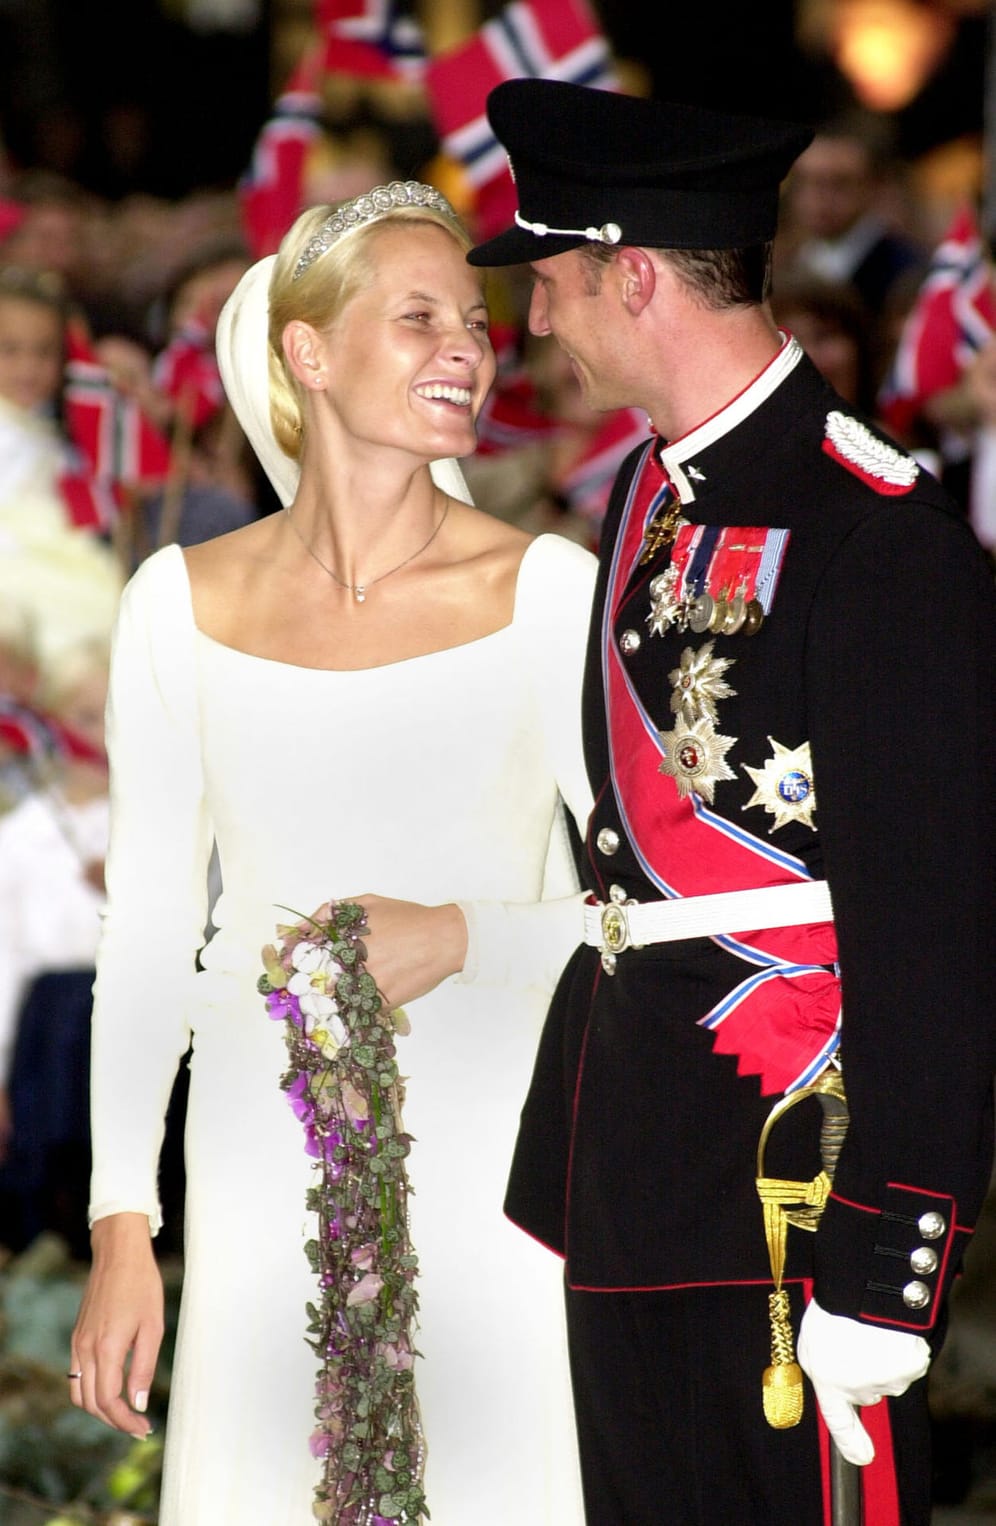 Traumhochzeit: Am 23. August 2001 heiratete die bürgerliche Mette-Marit ihren Kronprinz Haakon.